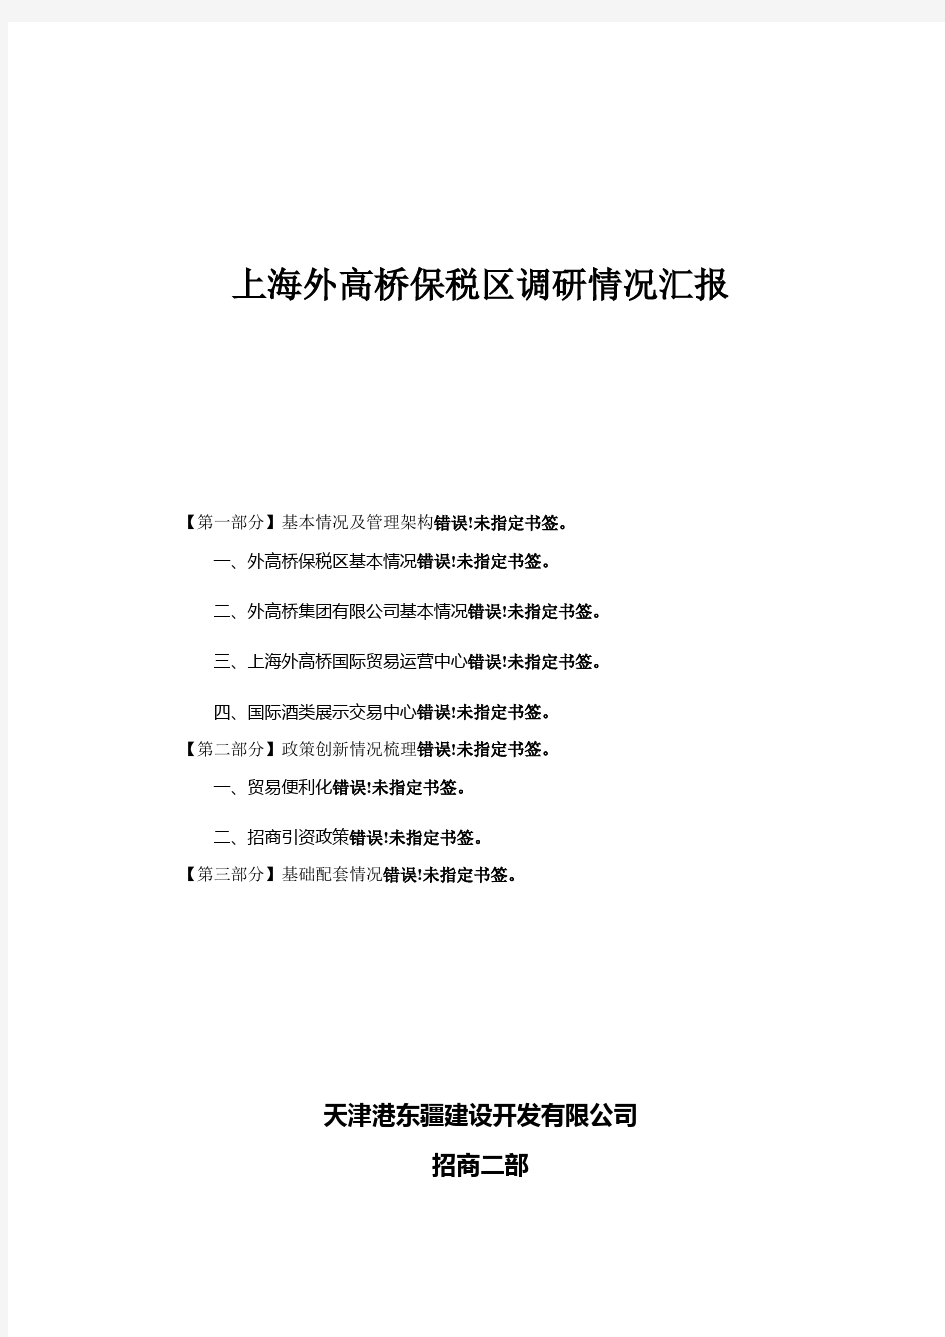 上海外高桥保税区调研情况汇报